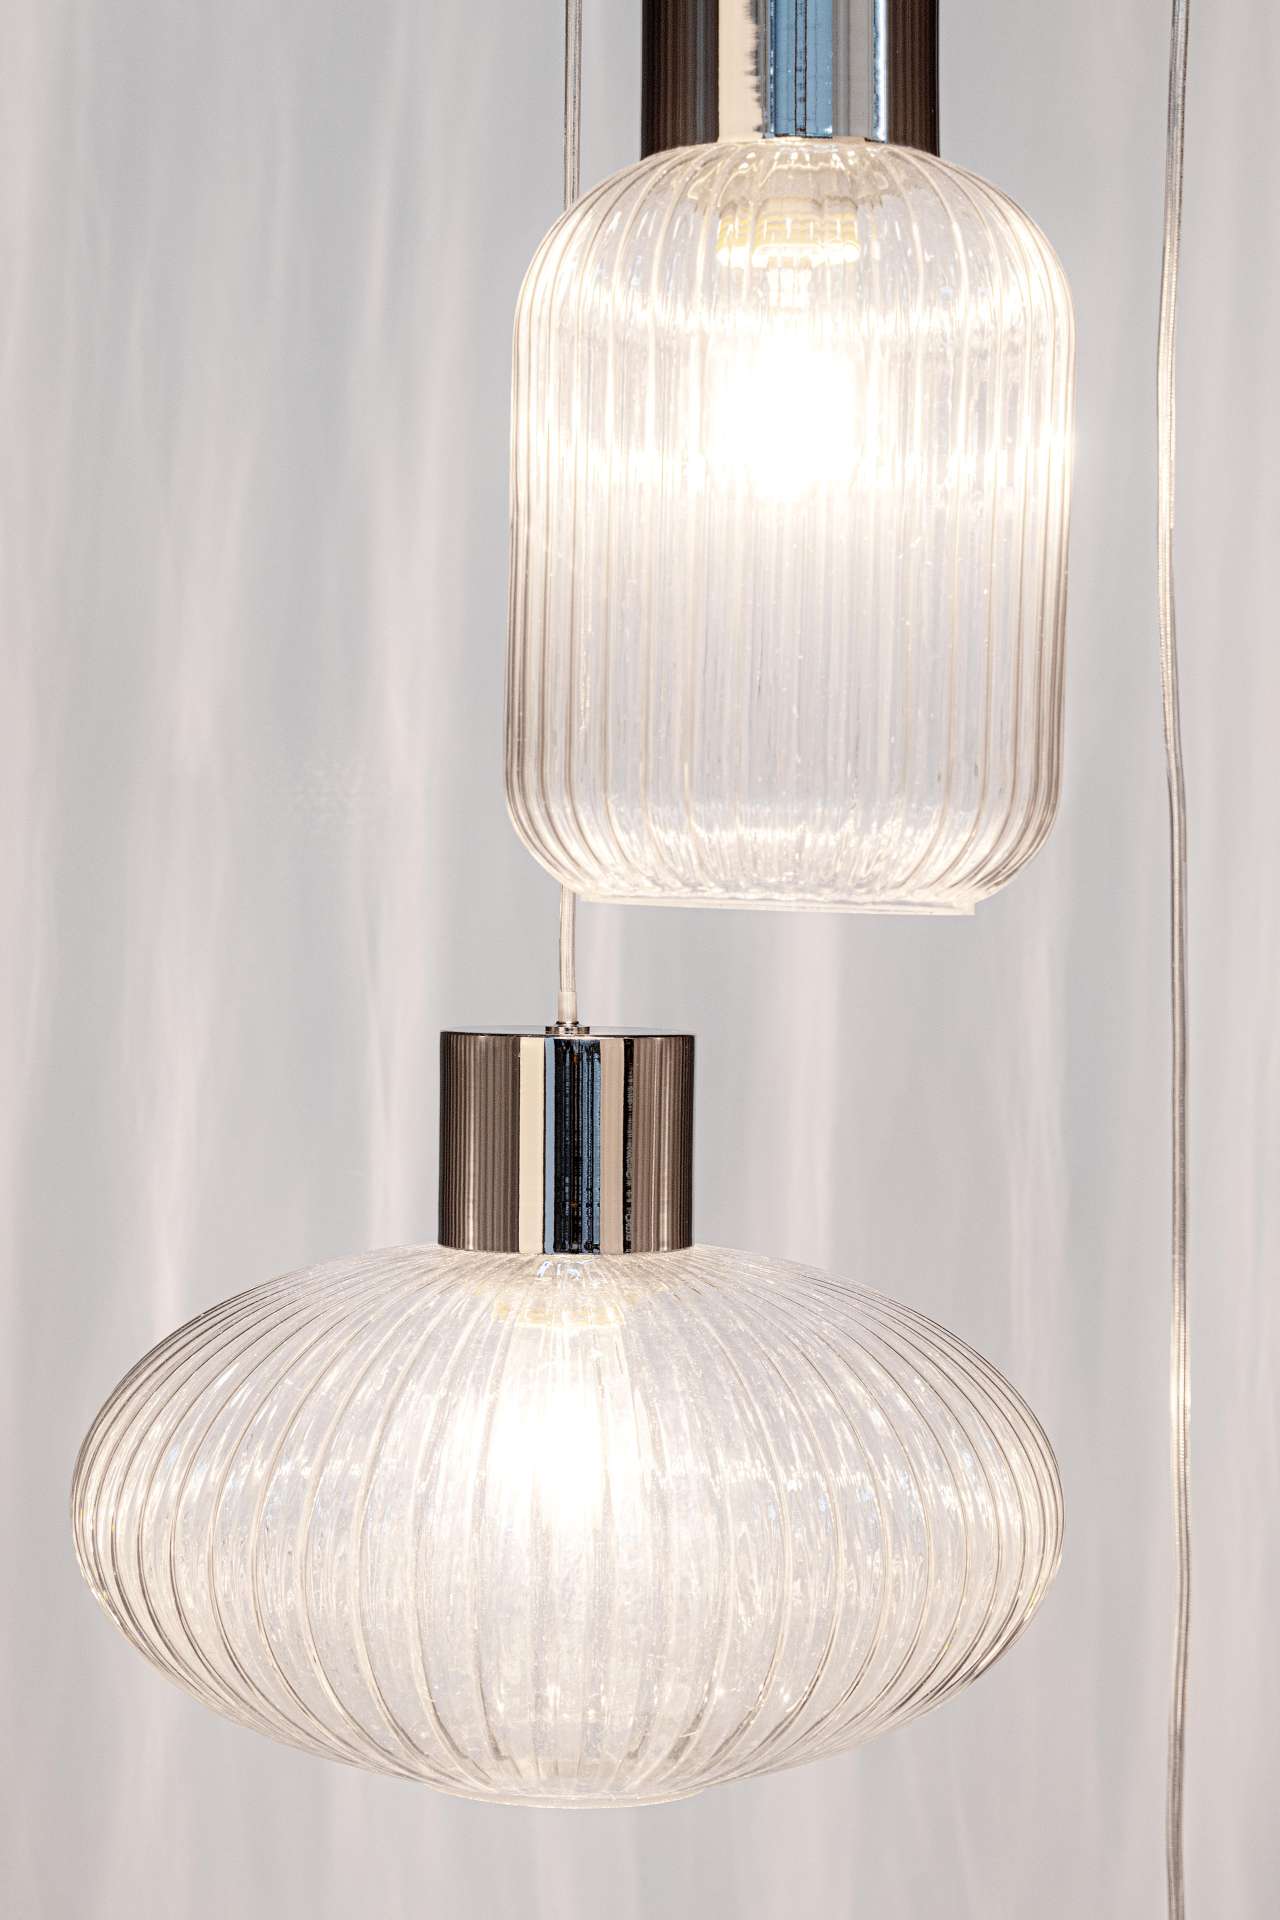 Die Hängeleuchte Showy überzeugt mit ihrem modernen Design. Gefertigt wurde sie aus Metall, welches einen silberne Farbton besitzt. Die Lampenschirme sind aus Glas und sind klar. Die Lampe besitzt eine Höhe von 150 cm.